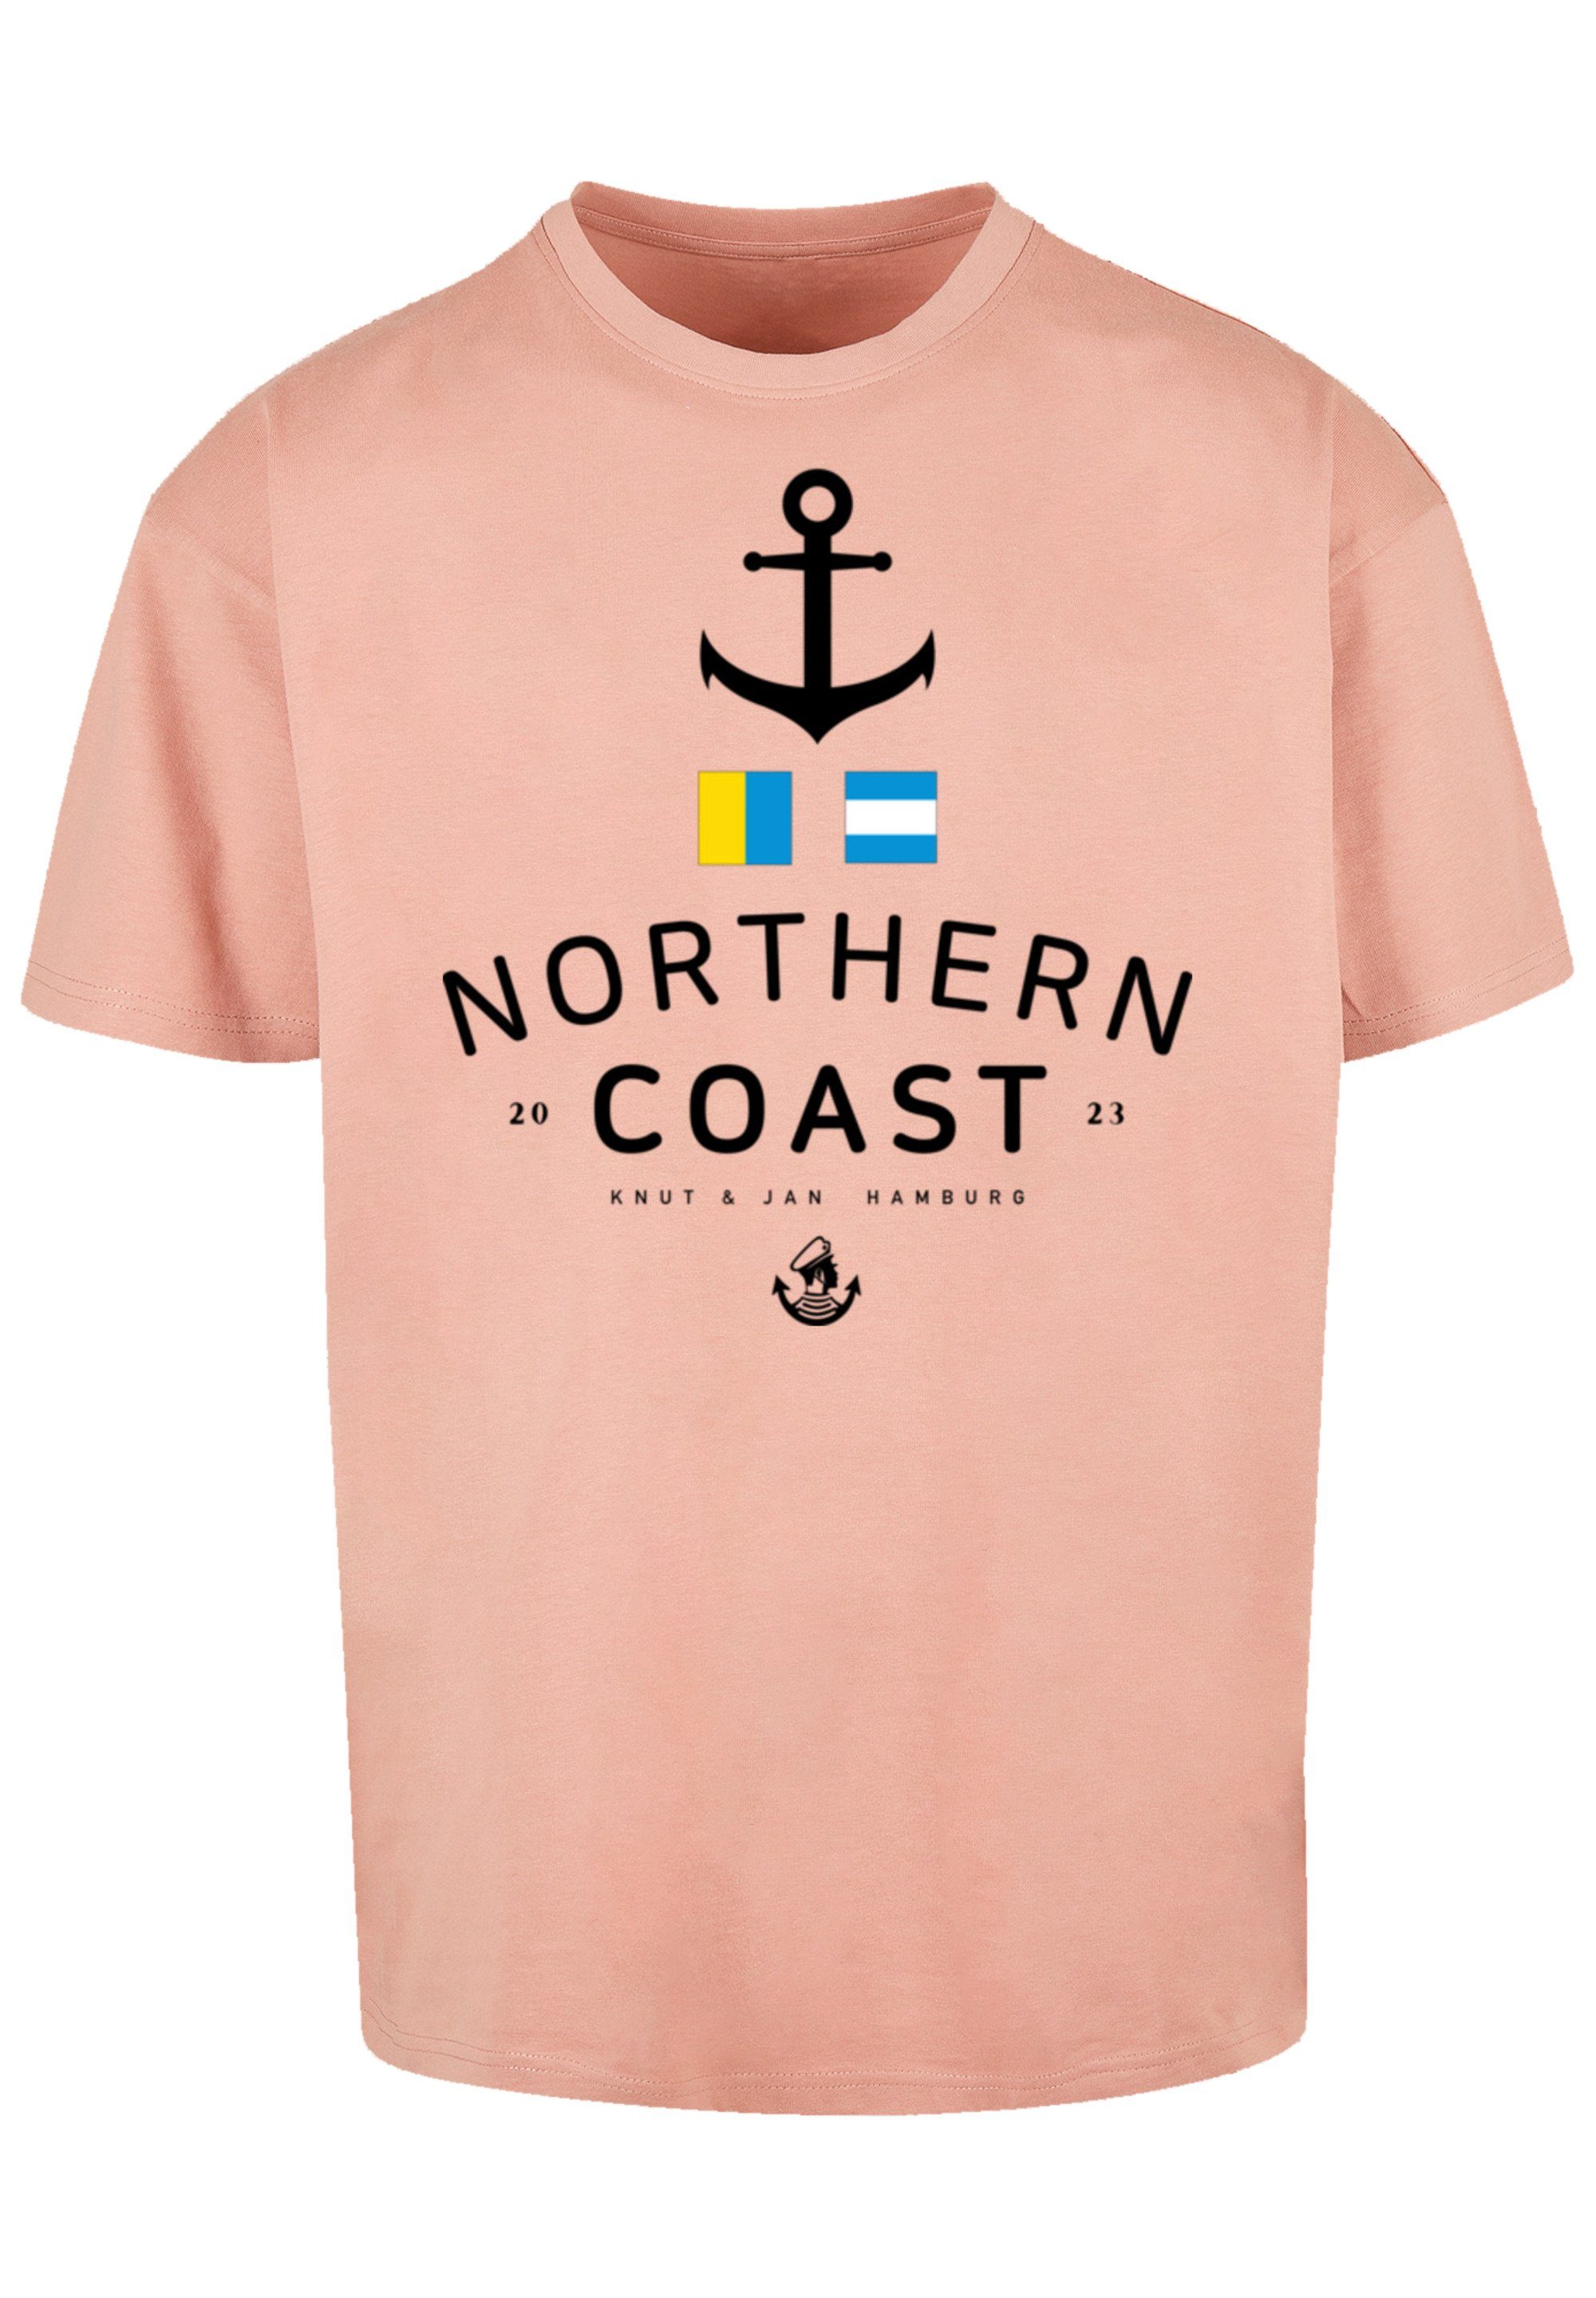 F4NT4STIC Print Coast Knut amber Jan T-Shirt Hamburg Nordic & Nordsee